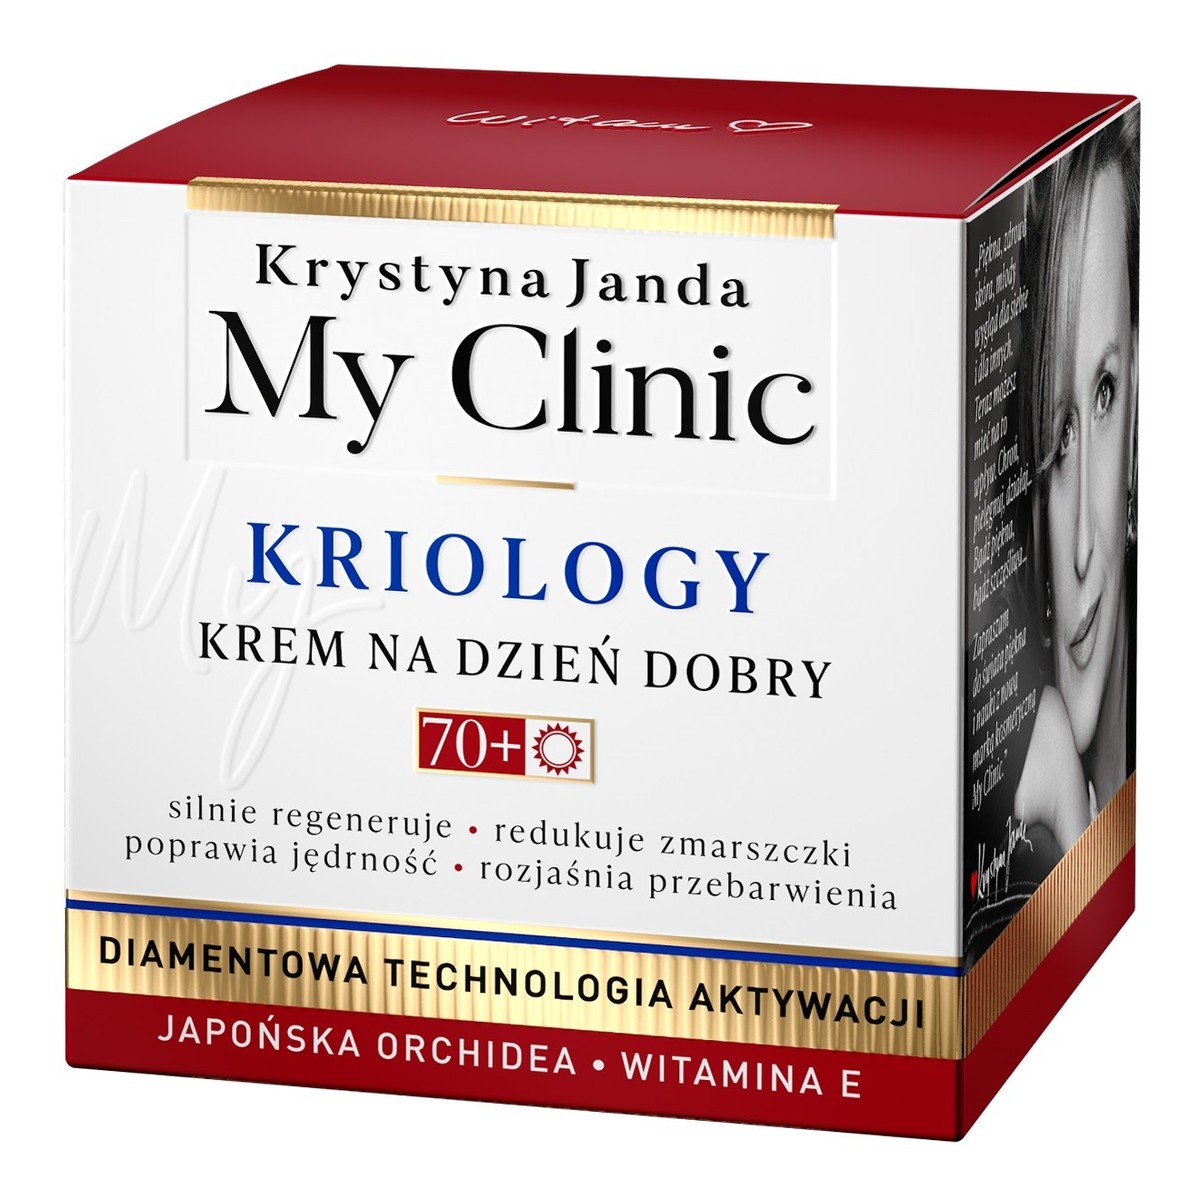 Janda My Clinic Kriology Krem do twarzy na dzień 70+ 50ml